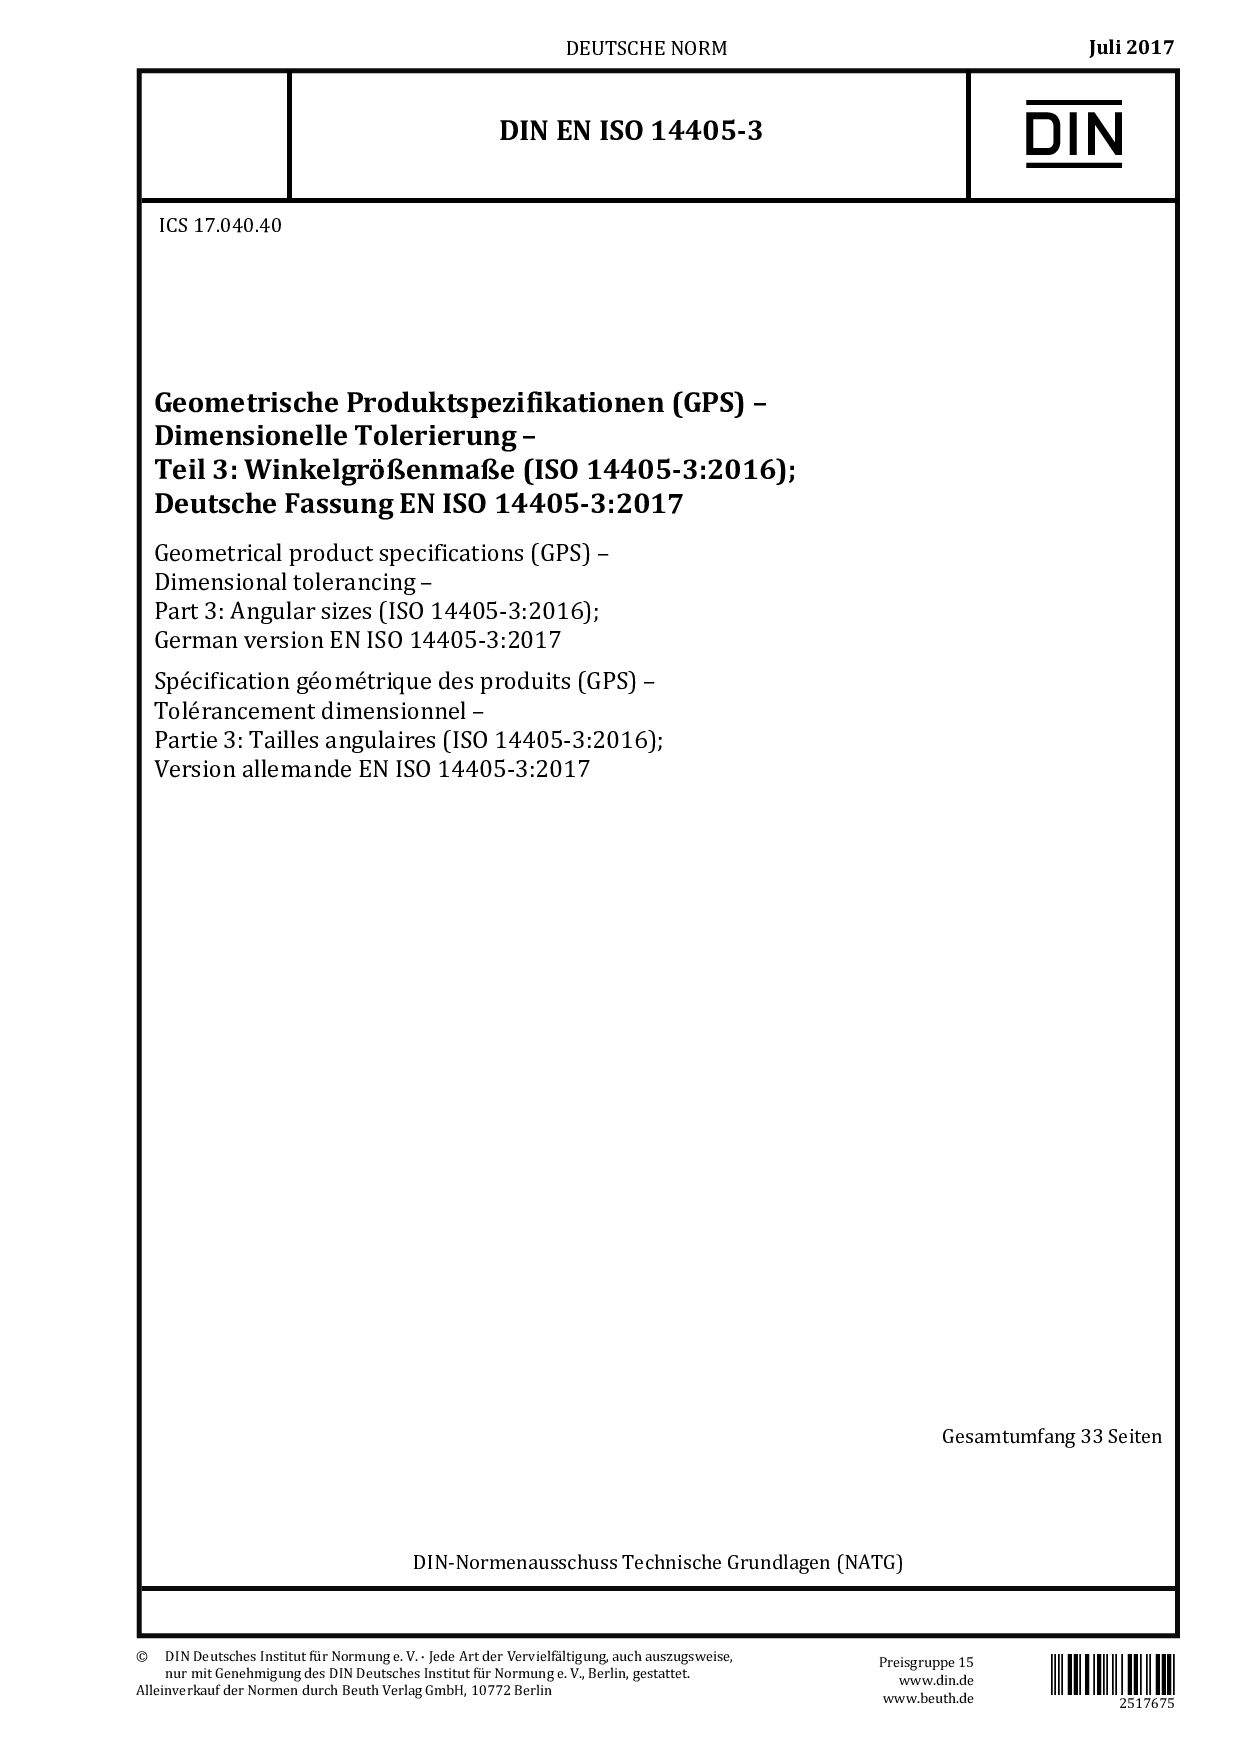 DIN EN ISO 14405-3:2017封面图